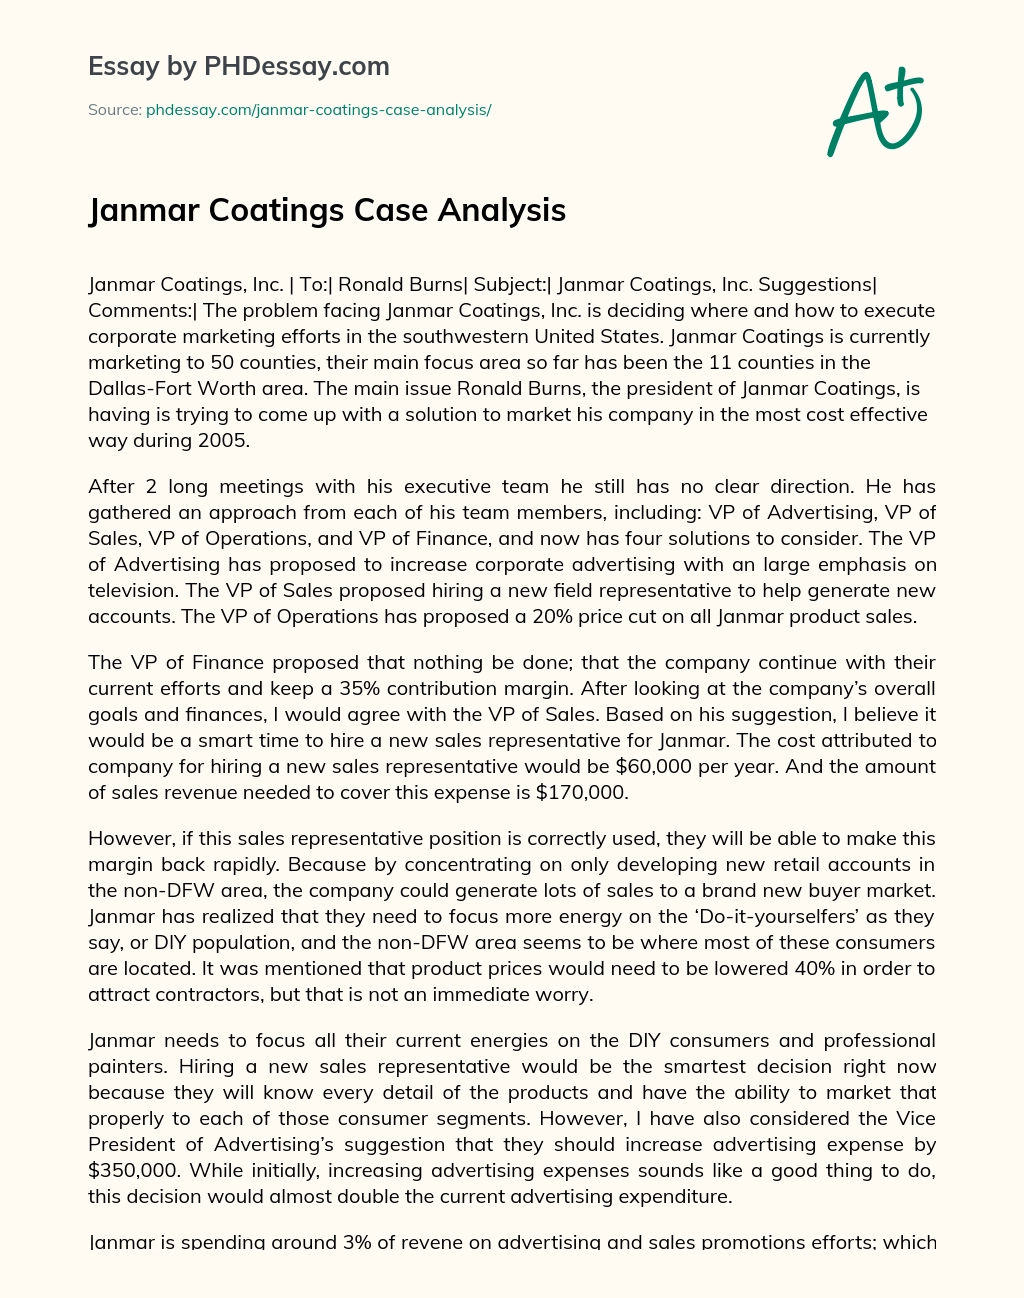 Janmar Coatings Case Analysis essay